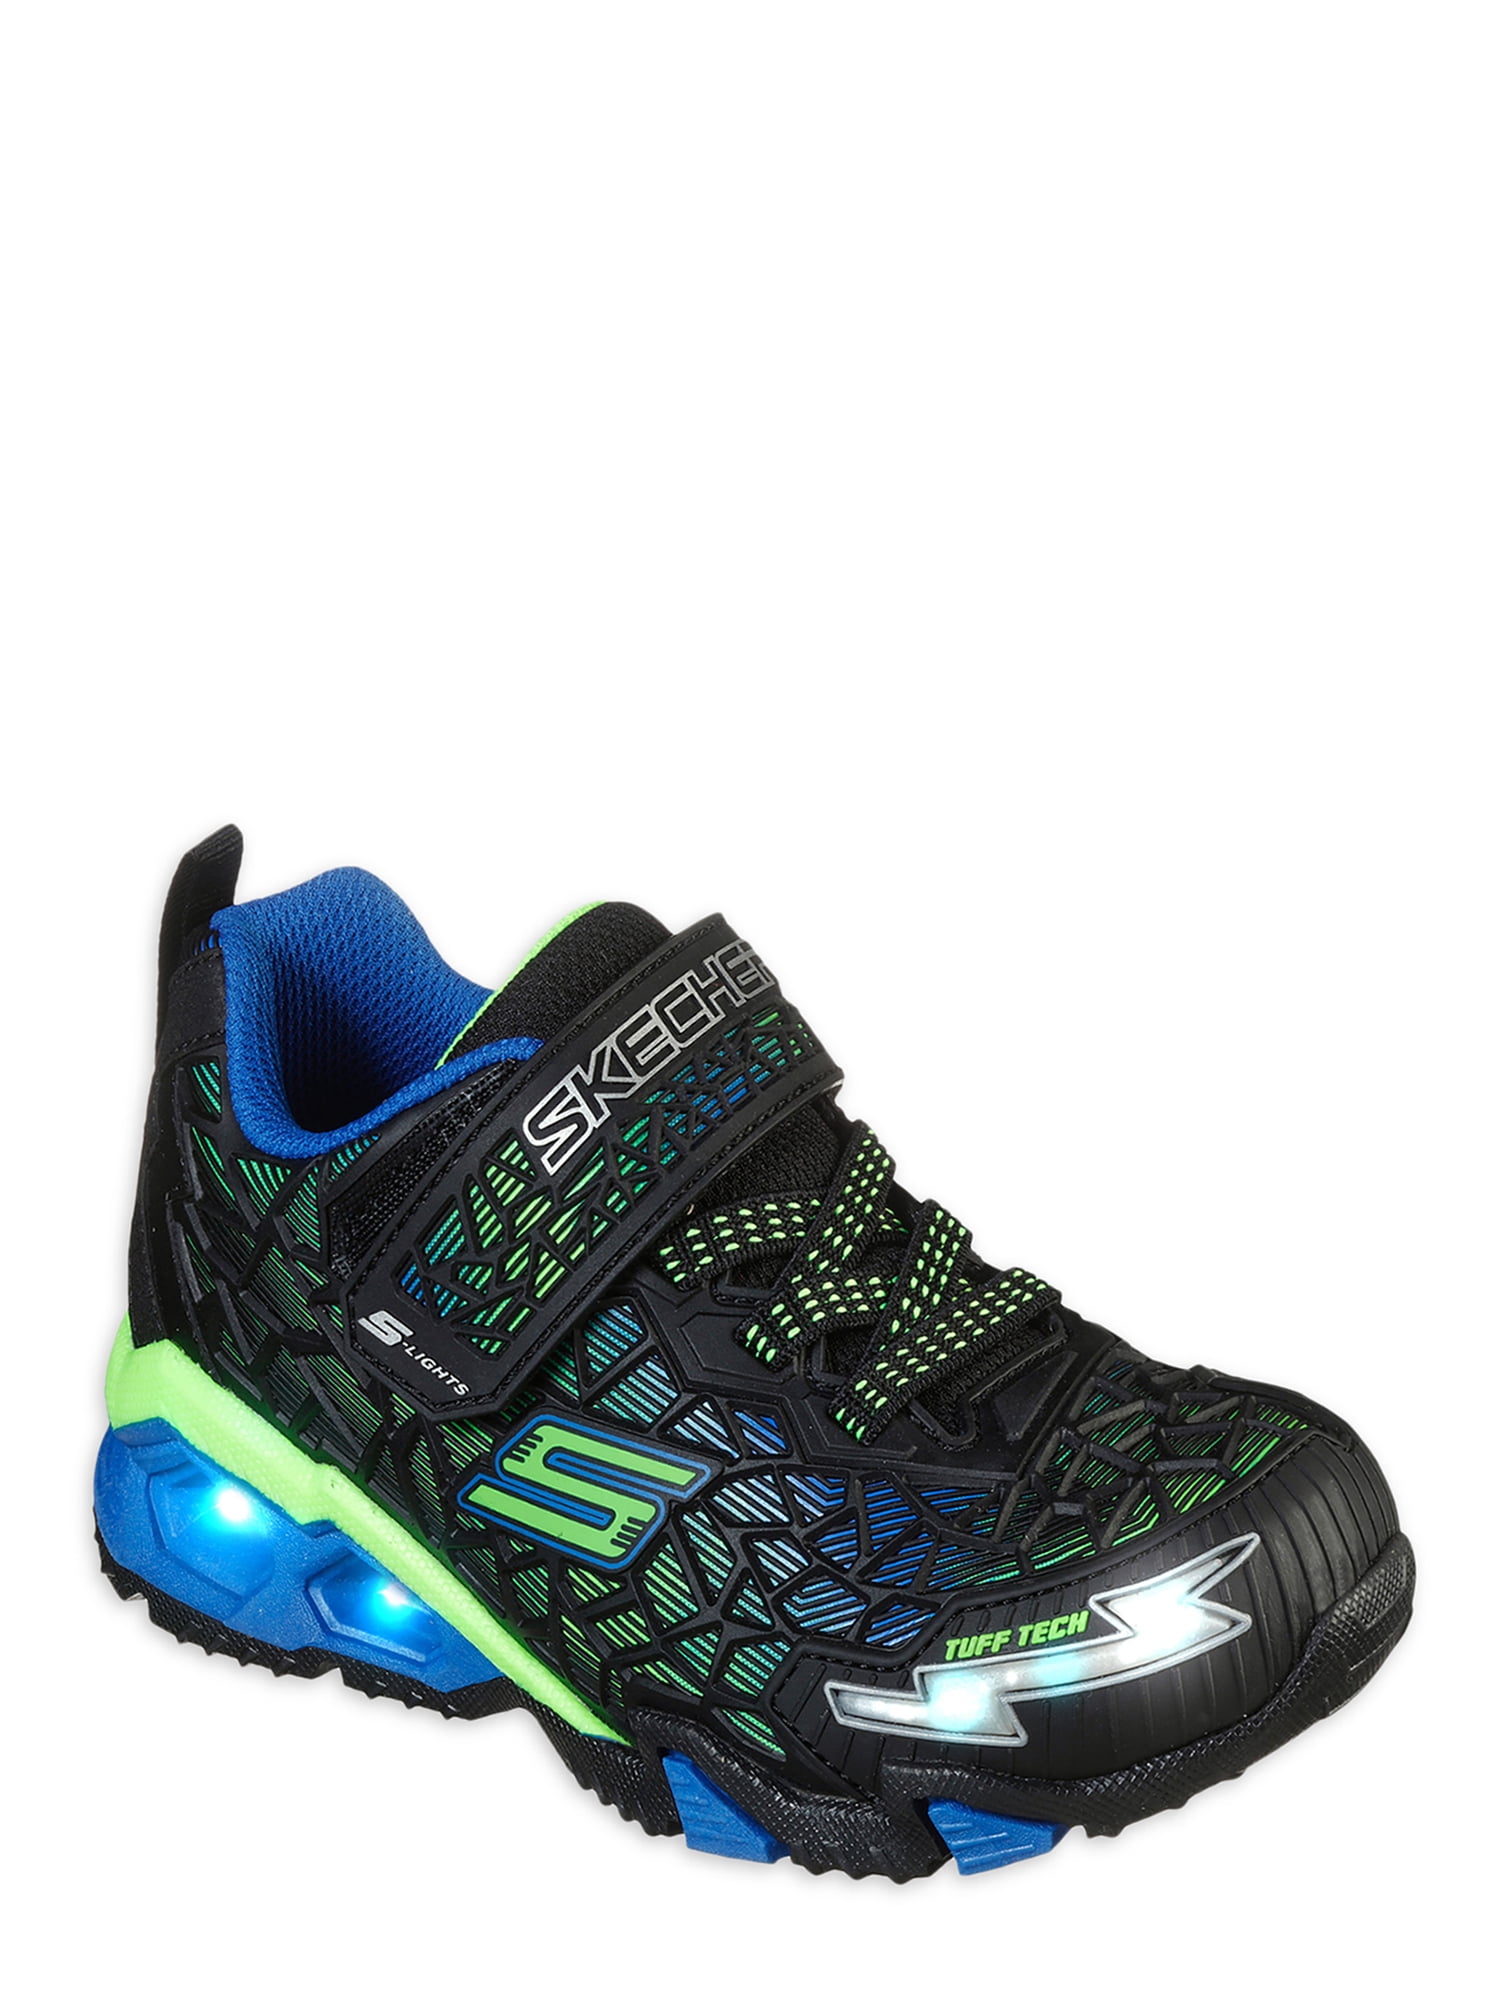 Skechers S Lights Hydro Lights Sneaker (Little Boy & Big Walmart.com